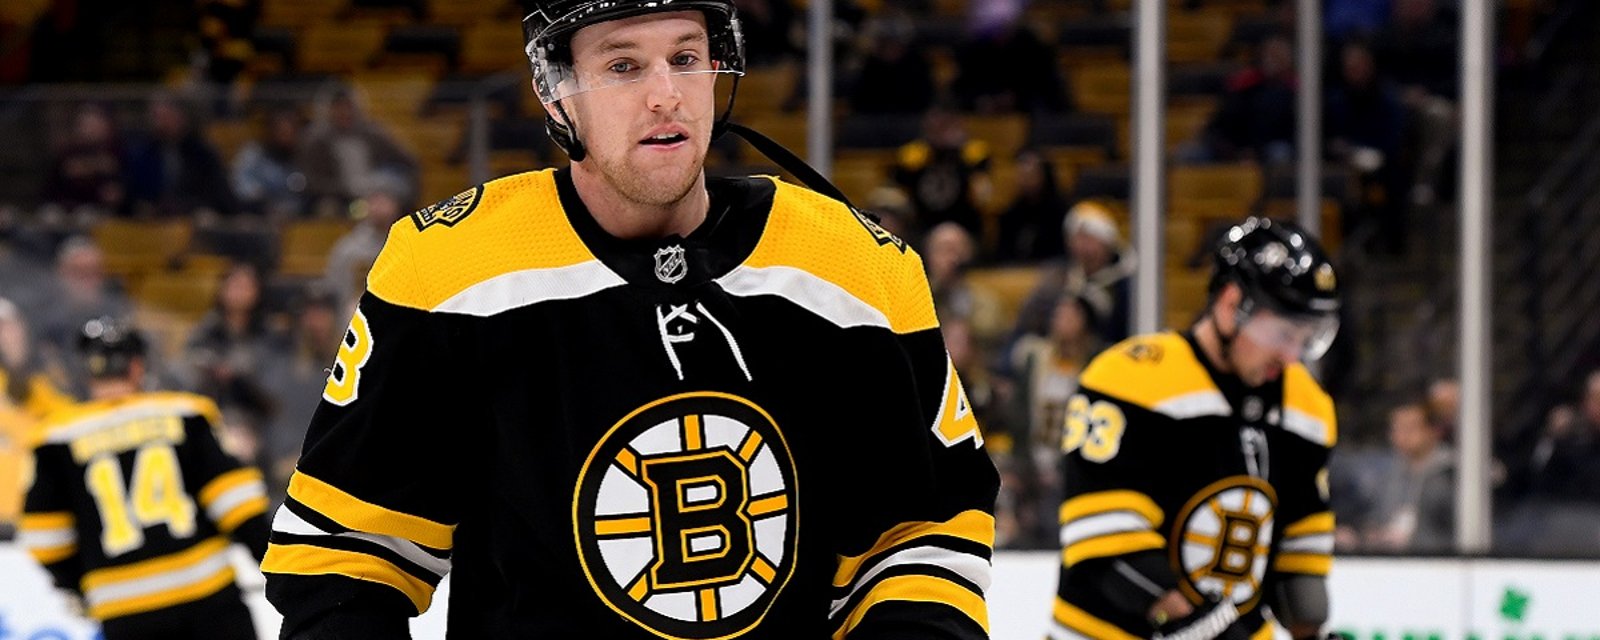 Matt Grzelcyk signs a new deal with the Boston Bruins.